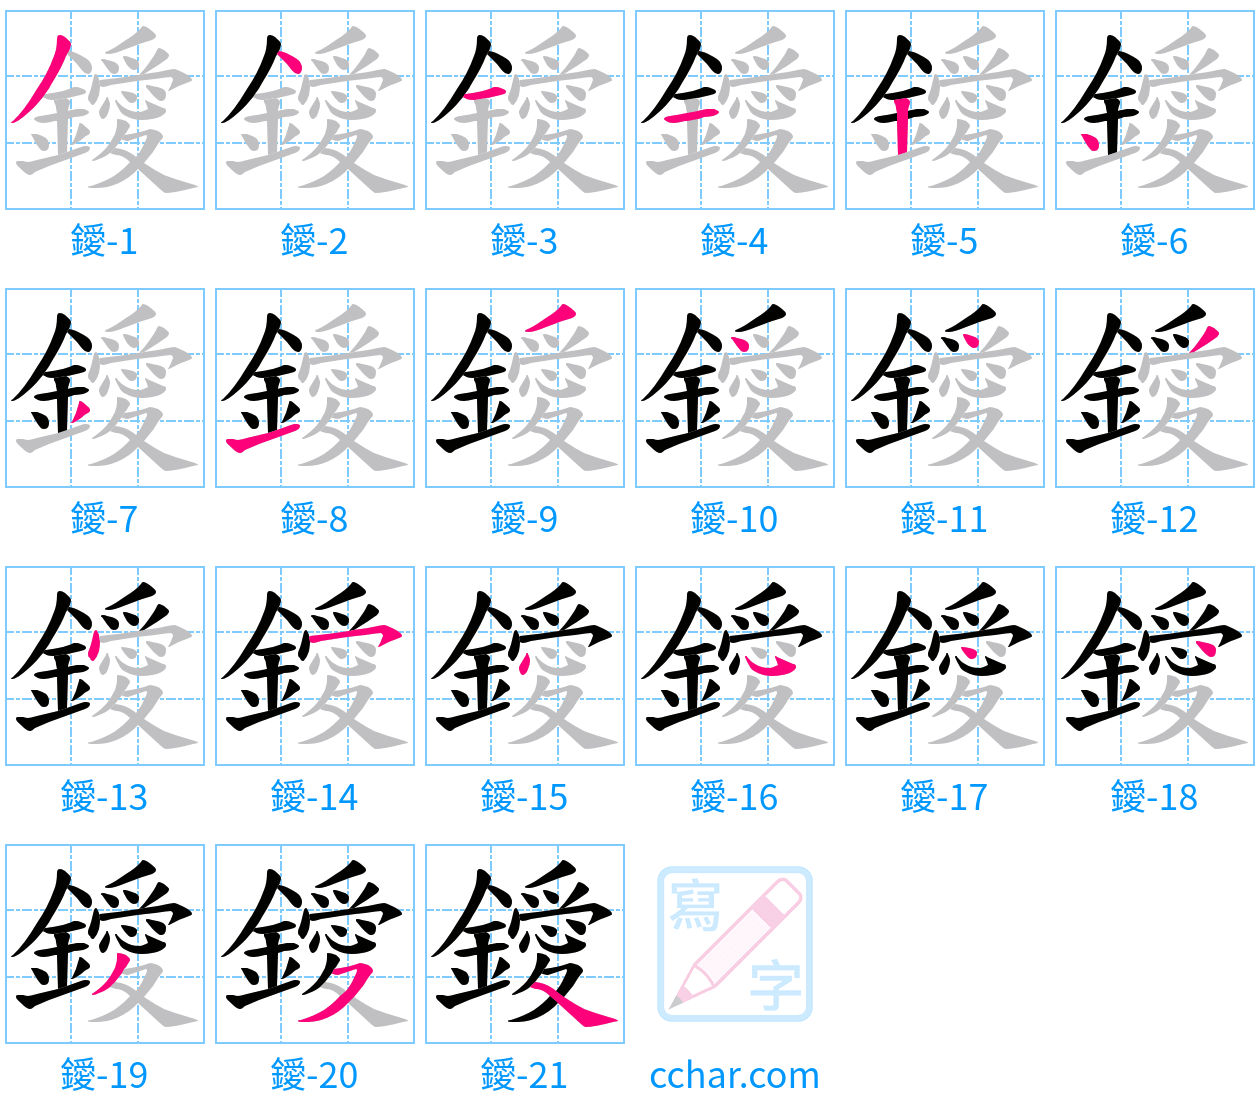 鑀 stroke order step-by-step diagram